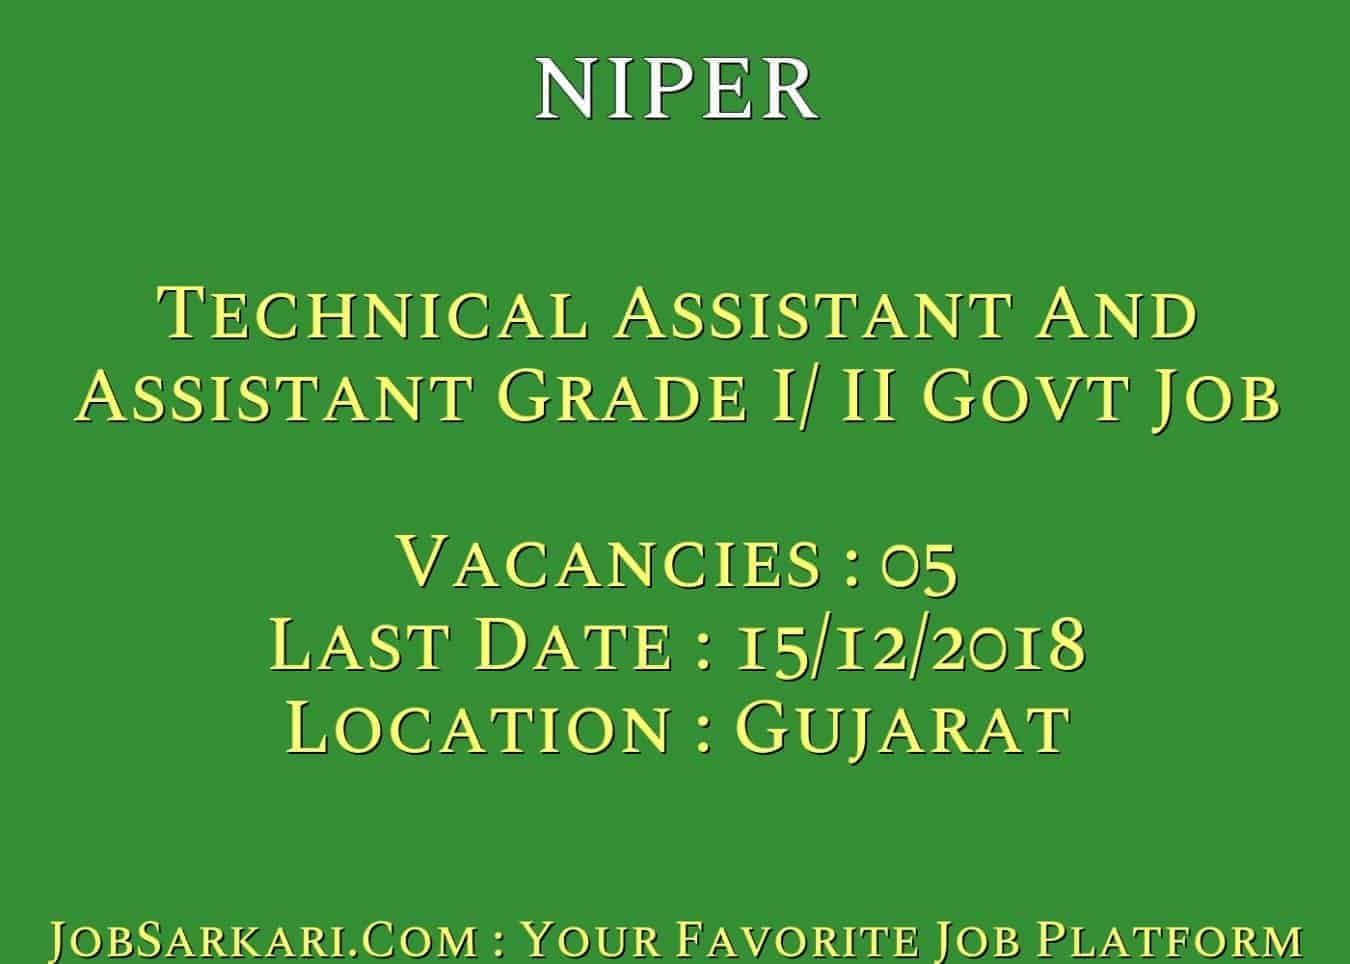 NIPER Recruitment 2018 For Technical Assistant And Assistant Grade I/ II Govt Job